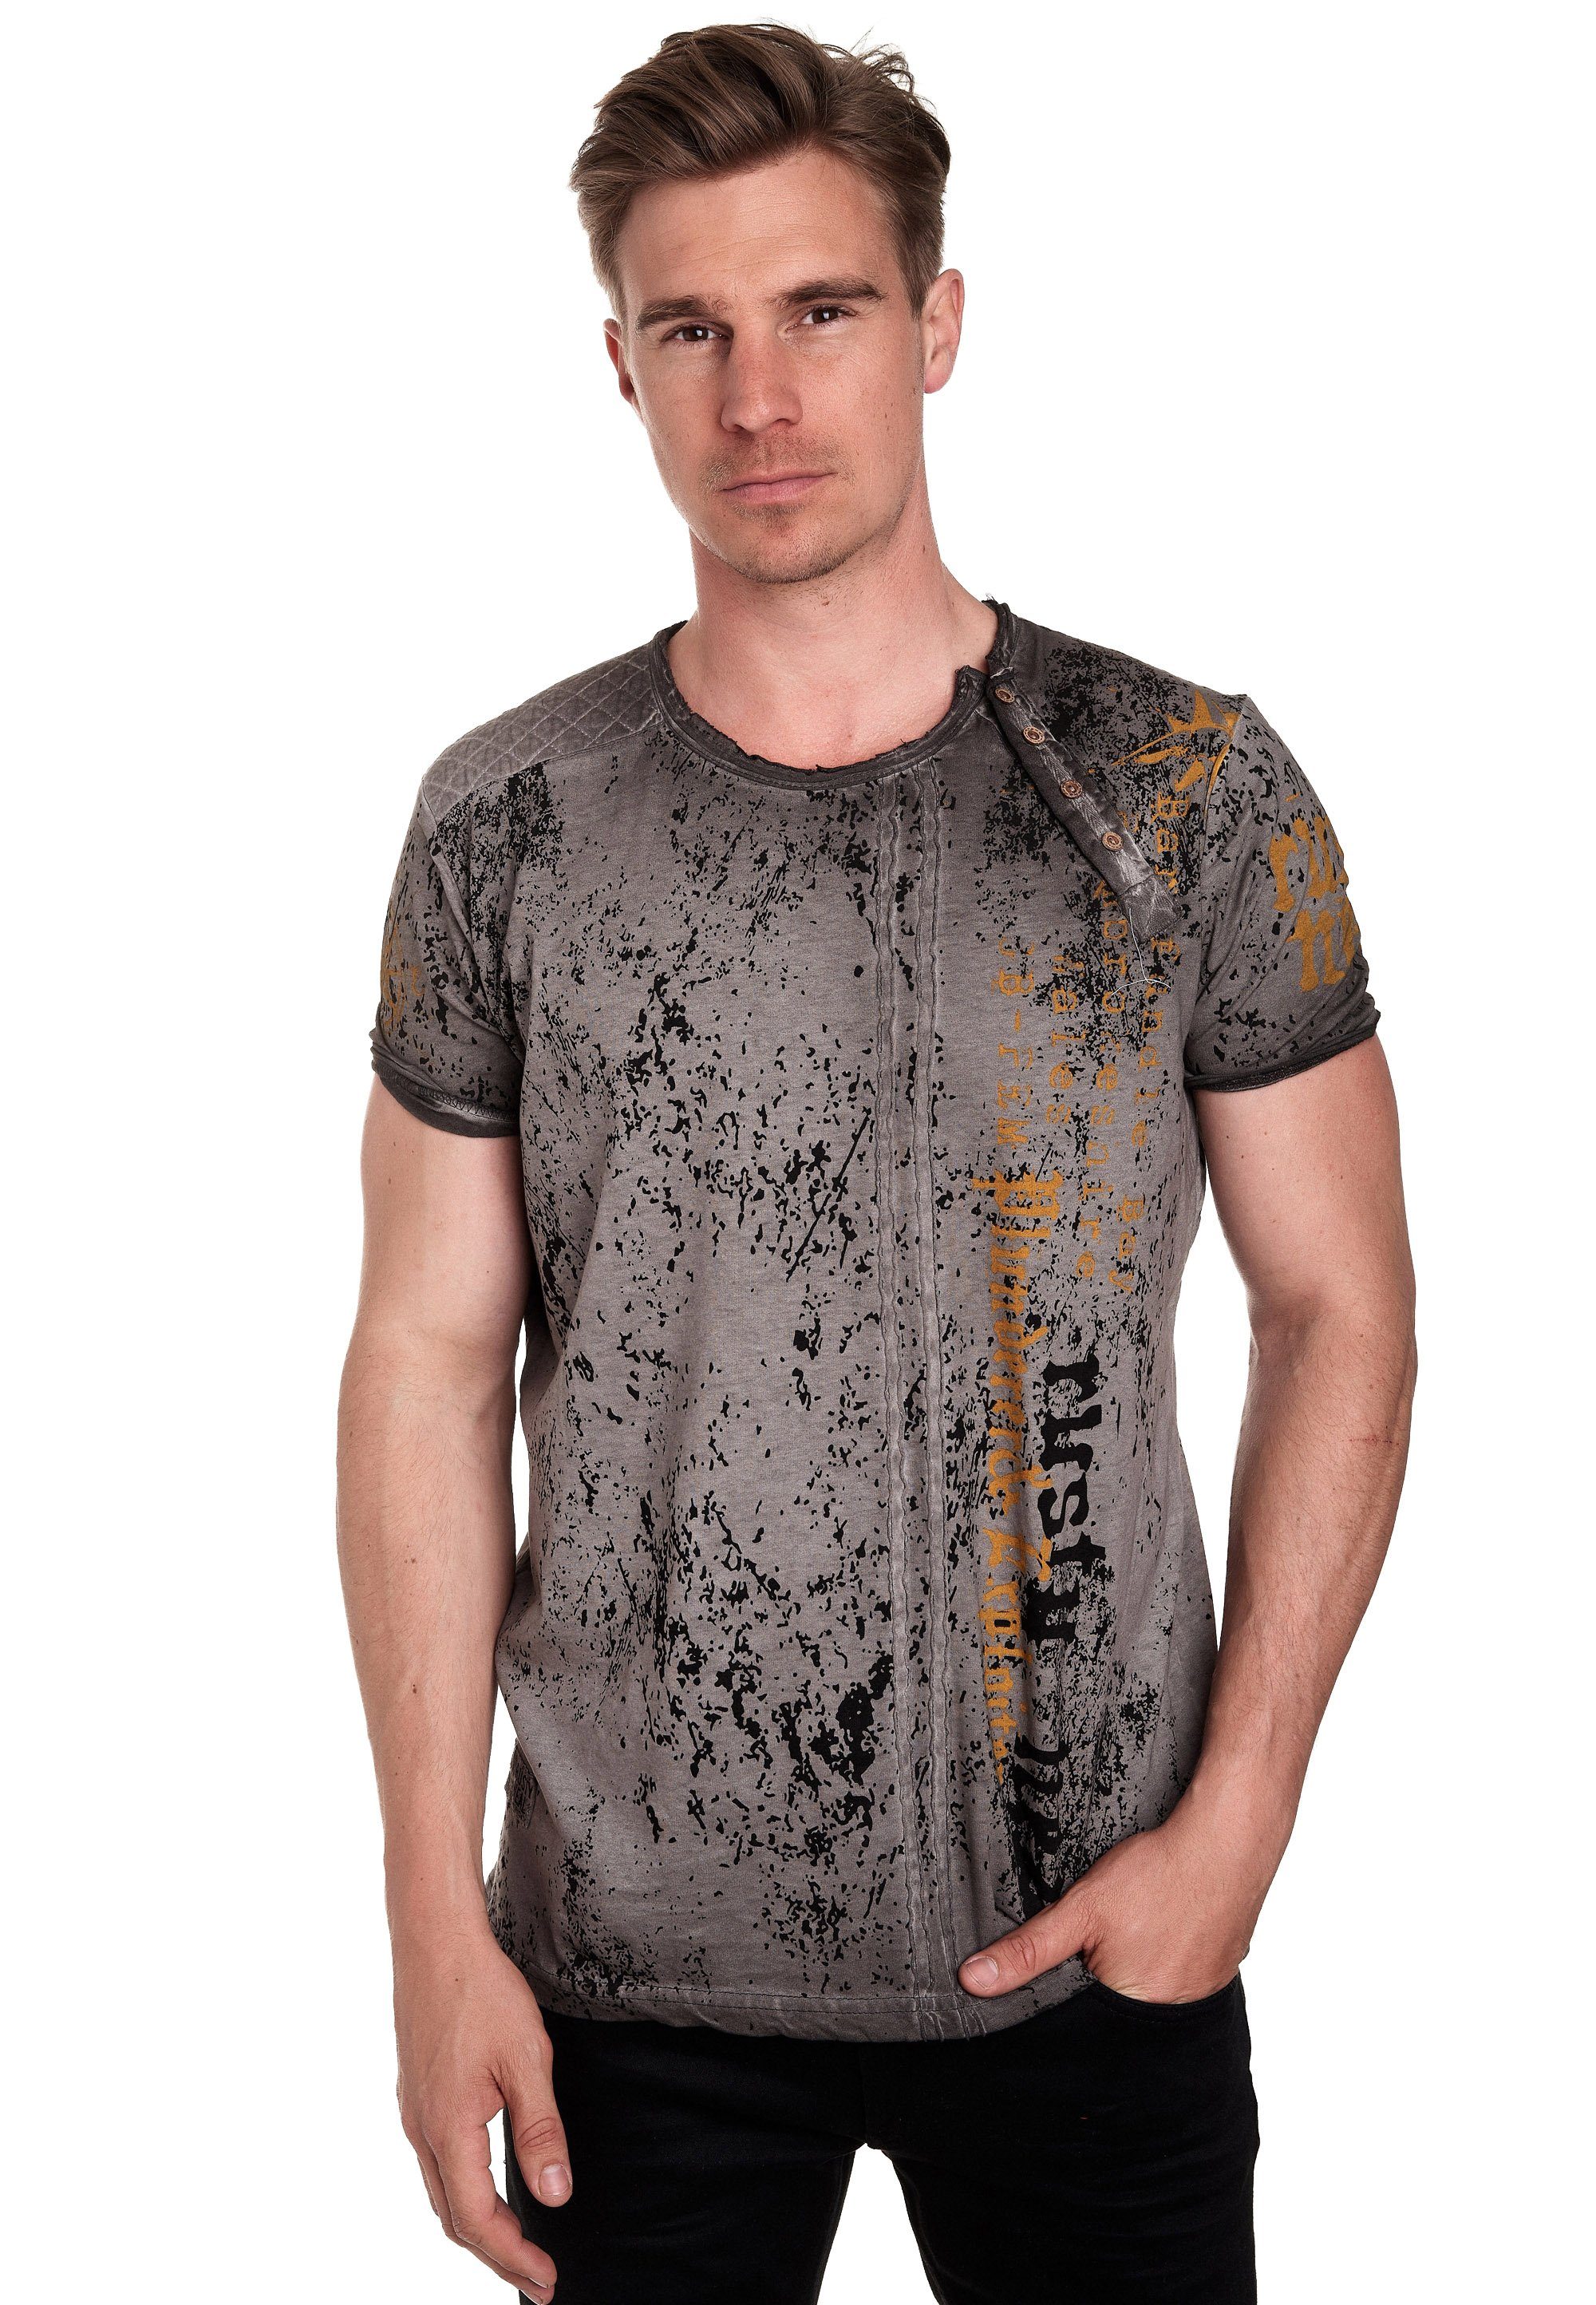 Rusty Neal T-Shirt mit seitlicher Knopfleiste anthrazit